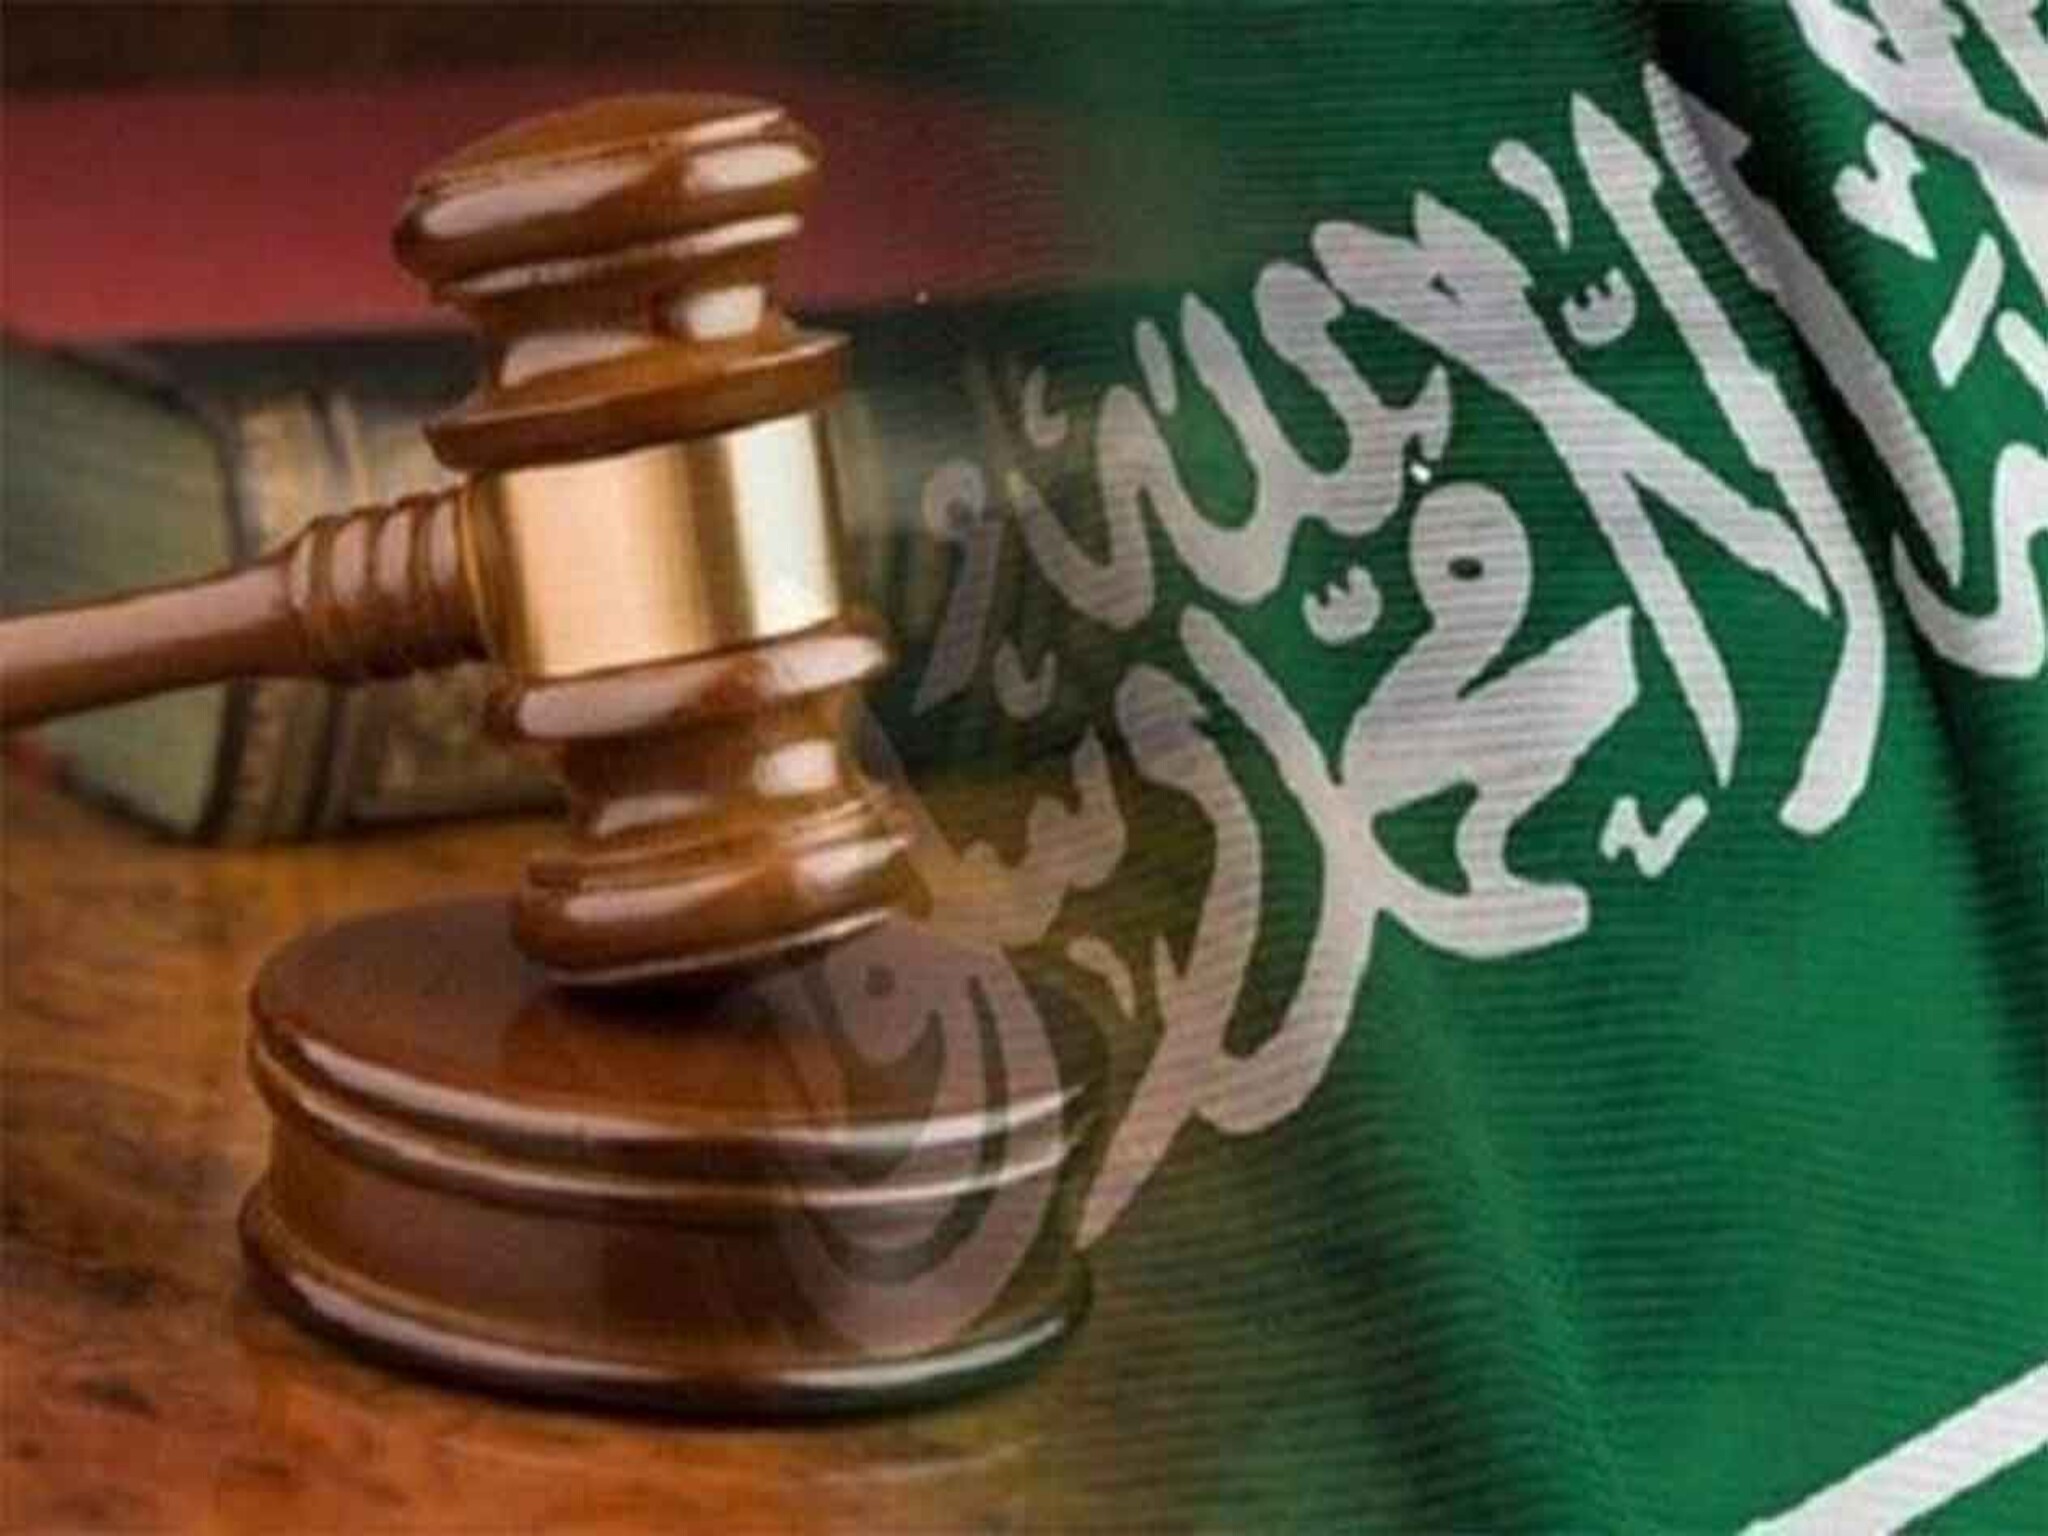 شروط وإجراءات الطلاق الجديدة عبر المحكمة 1445هـ في المملكة السعودية